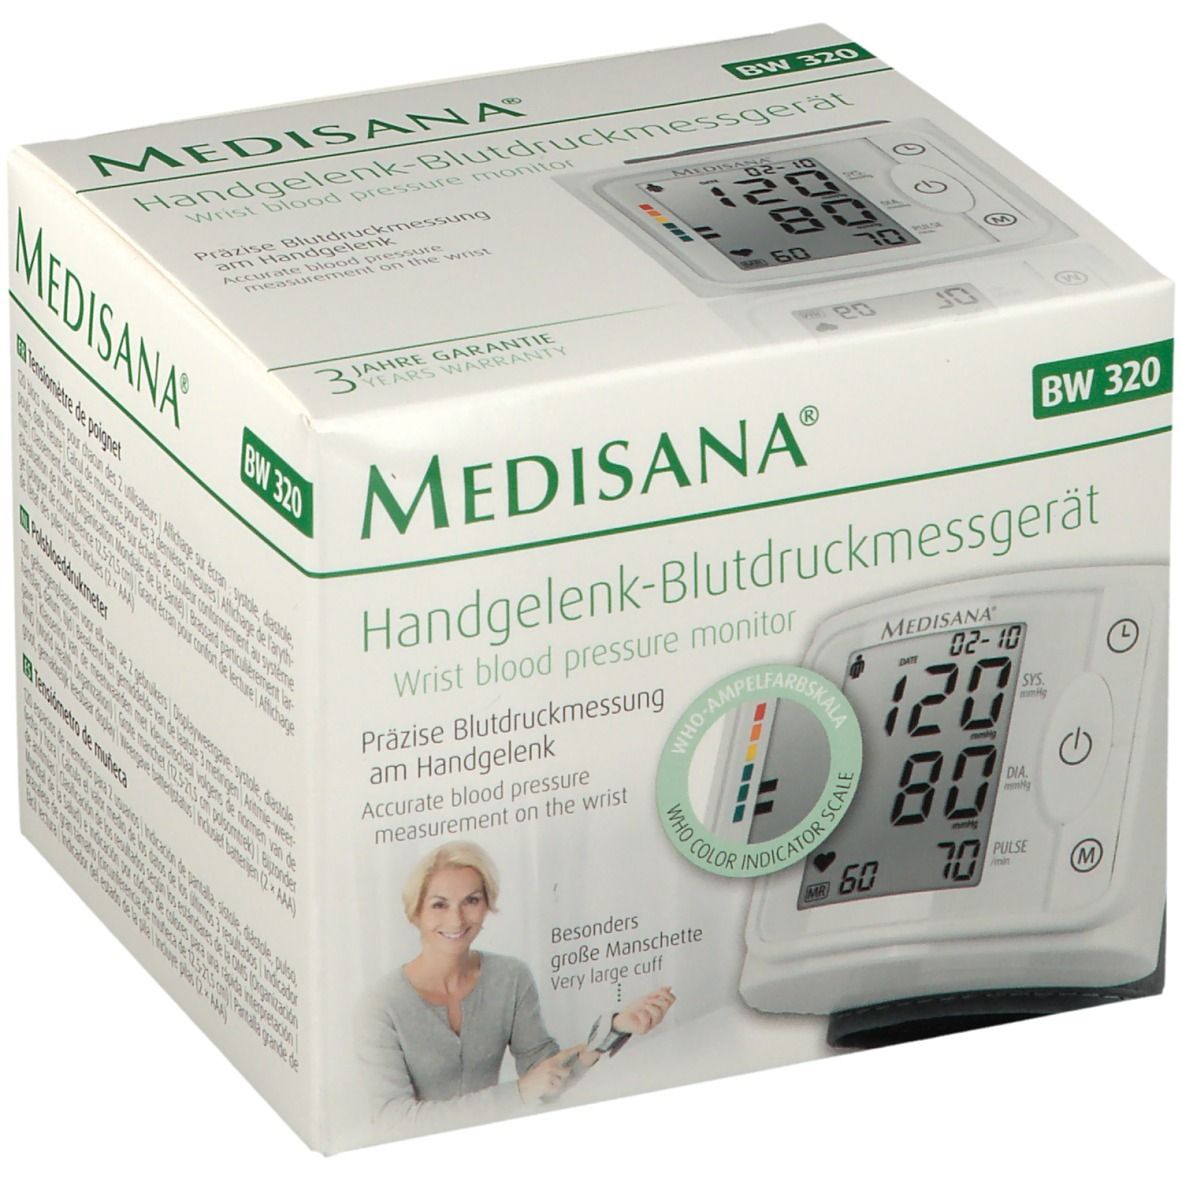 Medisana Handgelenk-Blutdruckmessgerät BW 320 1 St - Redcare Apotheke